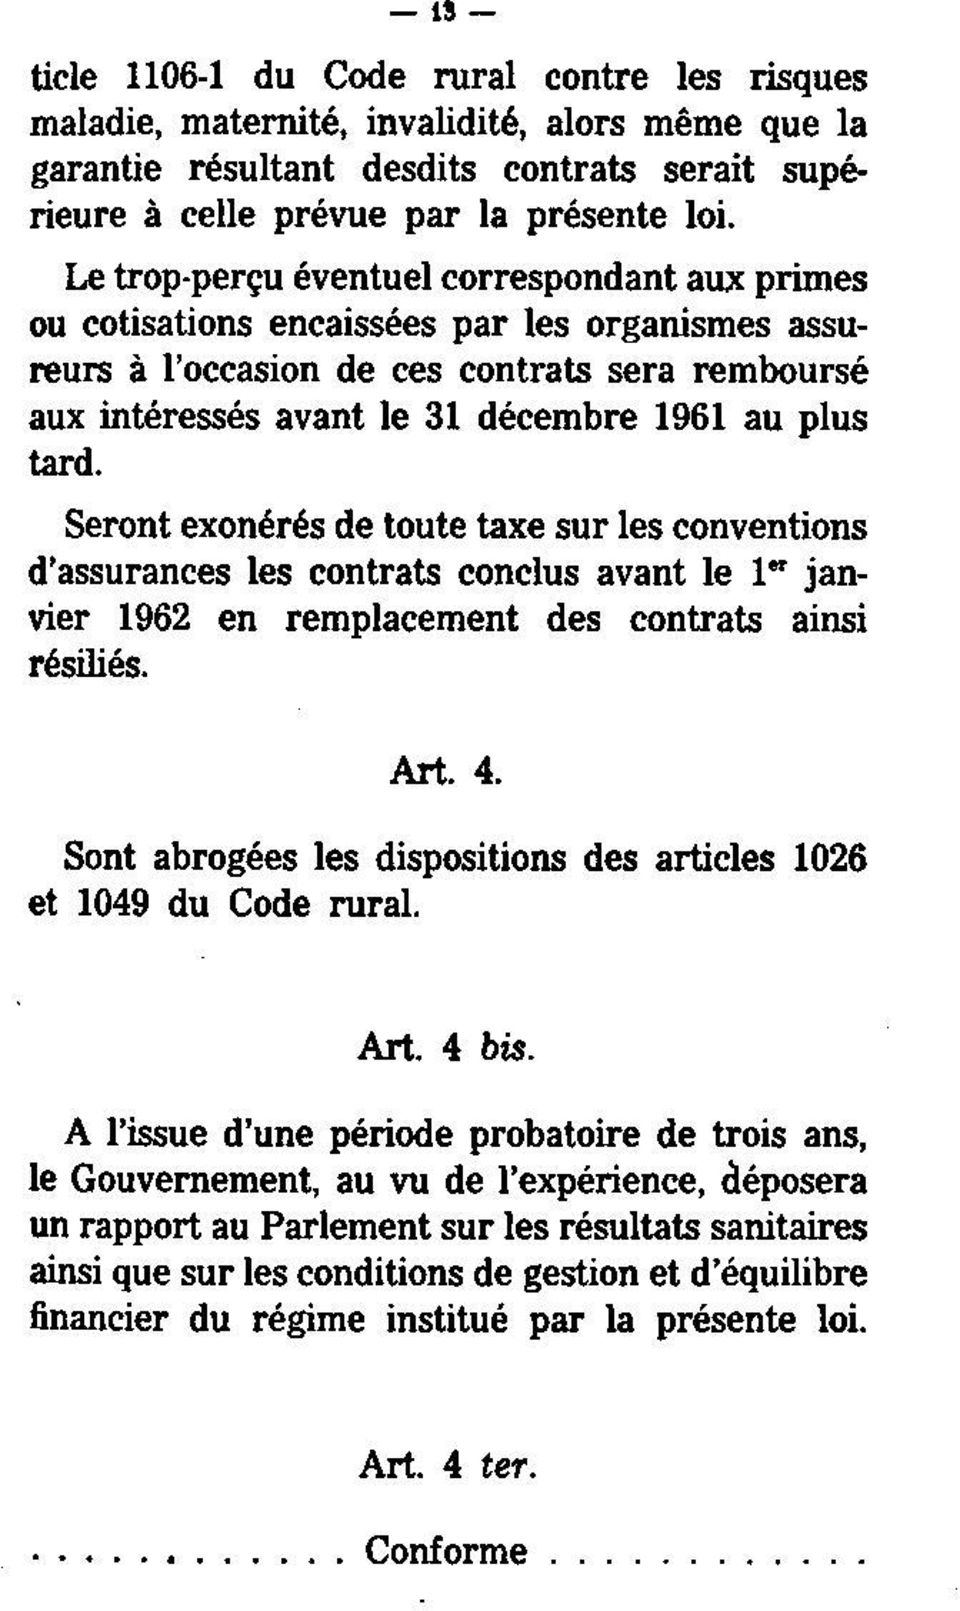 tard. Seront exonérés de toute taxe sur les conventions d'assurances les contrats conclus avant le 1" janvier 1962 en remplacement des contrats ainsi résiliés. Art. 4.